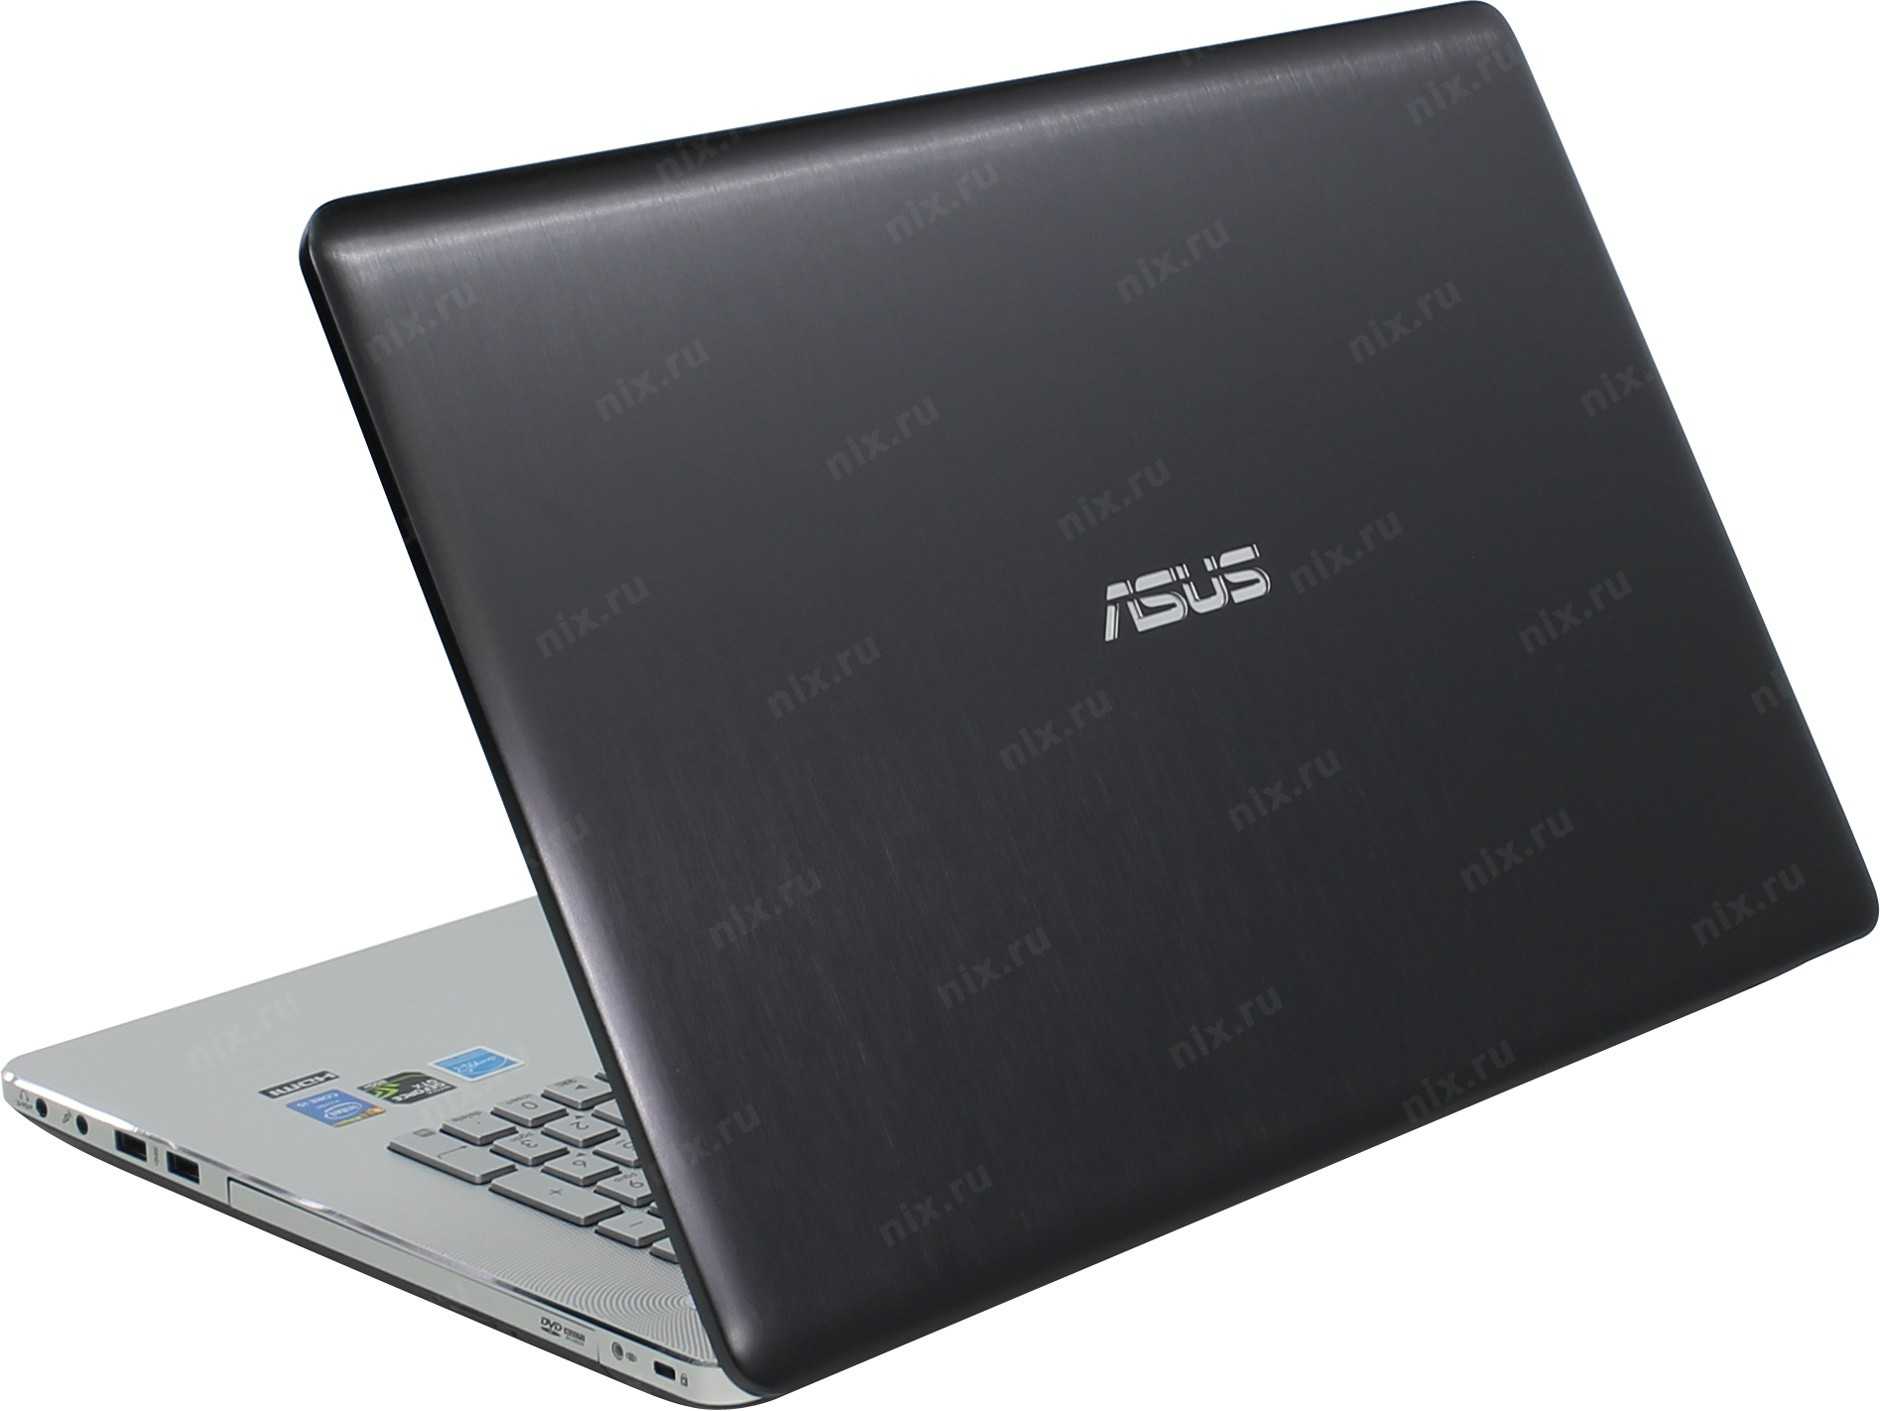 Ноутбук asus n750jk-t4166h — купить, цена и характеристики, отзывы